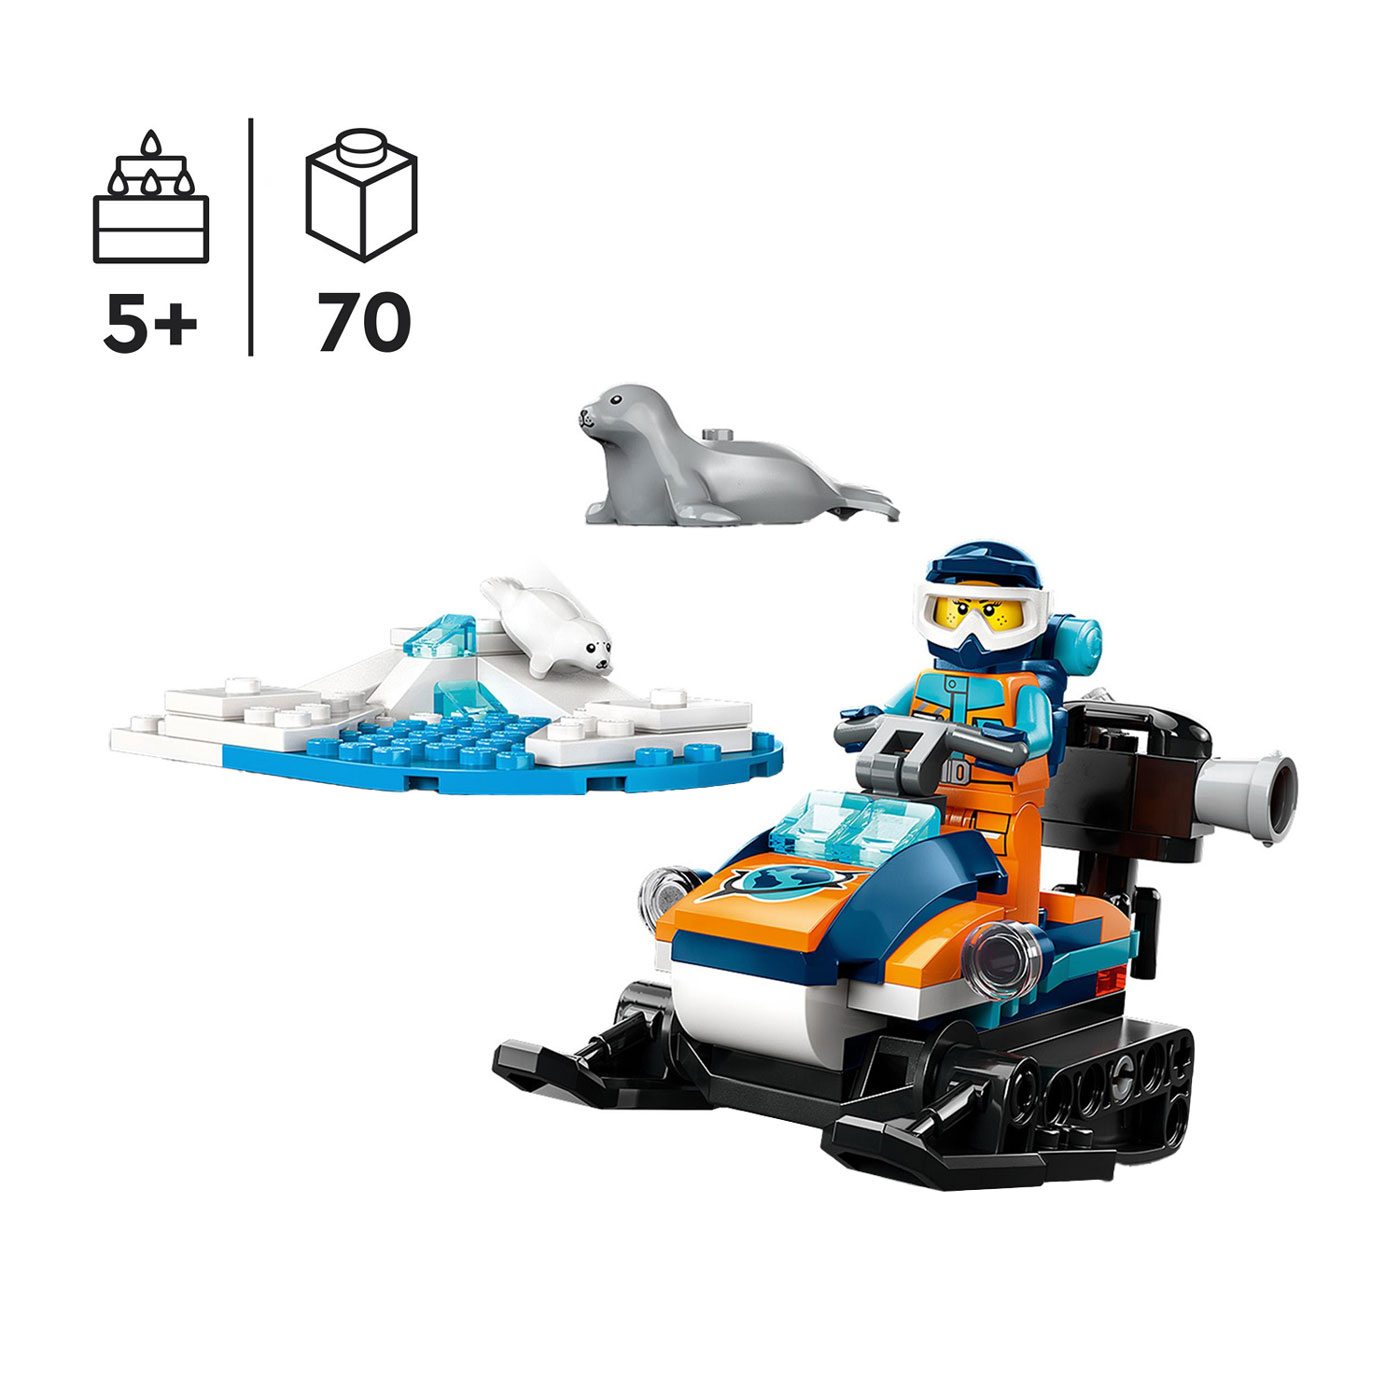 LEGO City 60376 Sneeuwscooter Voor Poolonderzoek